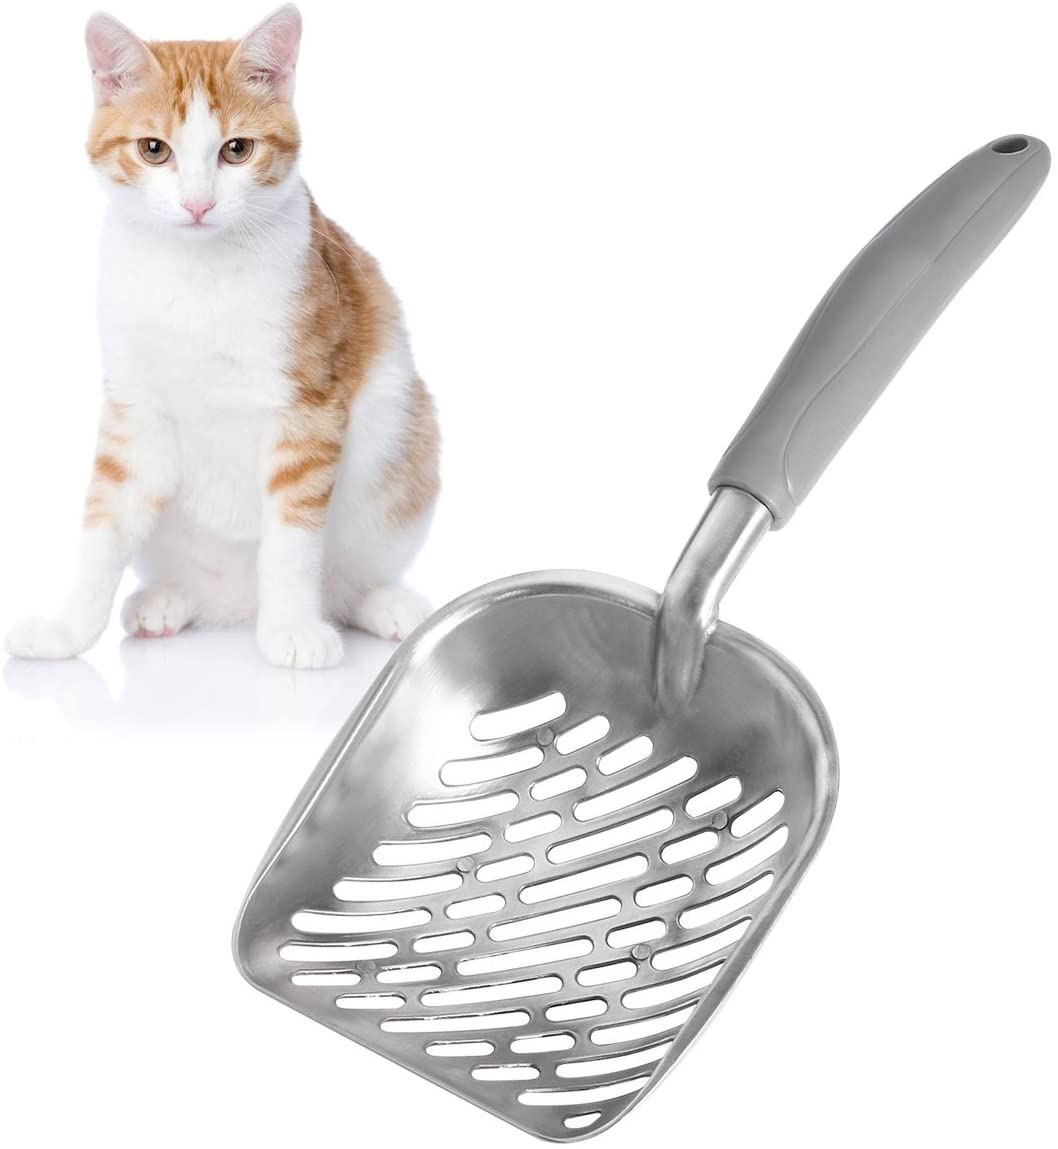  UEETEK Pala de basura para gatos,El metal de aluminio durable se dispersó la cucharada con el mango largo gomoso cómodo agarre para el gatito del gato del animal doméstico, 35 * 15CM (L * W) 